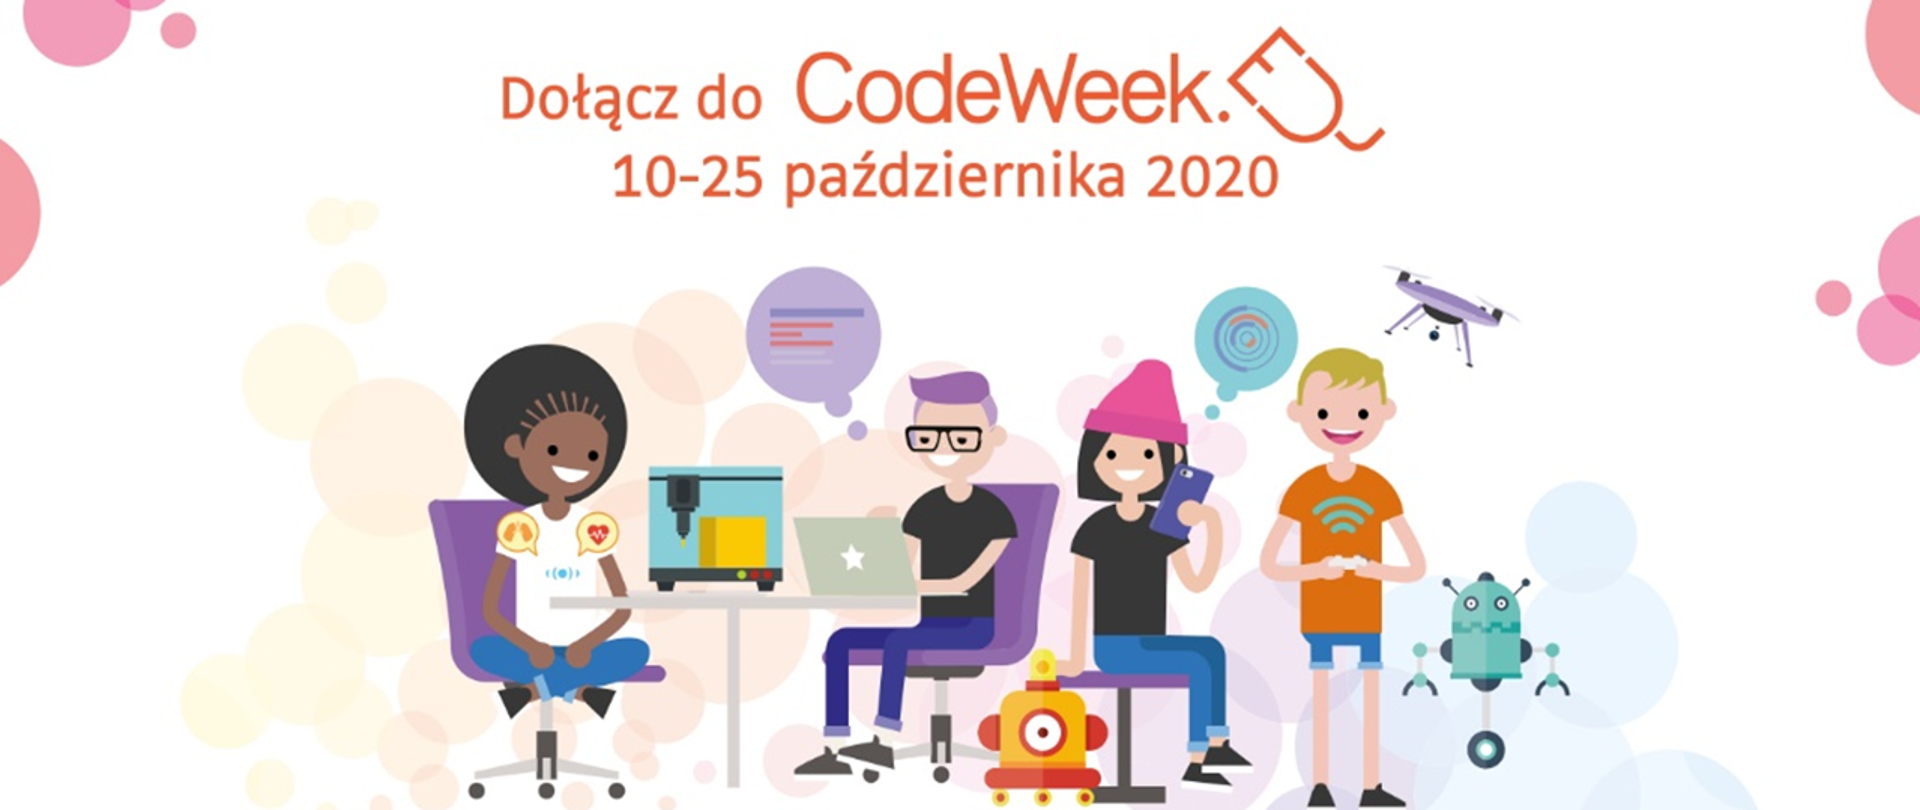 Jasna, kolorowa grafika z nastolatkami korzystającymi z nowych technologii. Nad nimi tekst "Dołącz do CodeWeek, 10-25 października 2020"